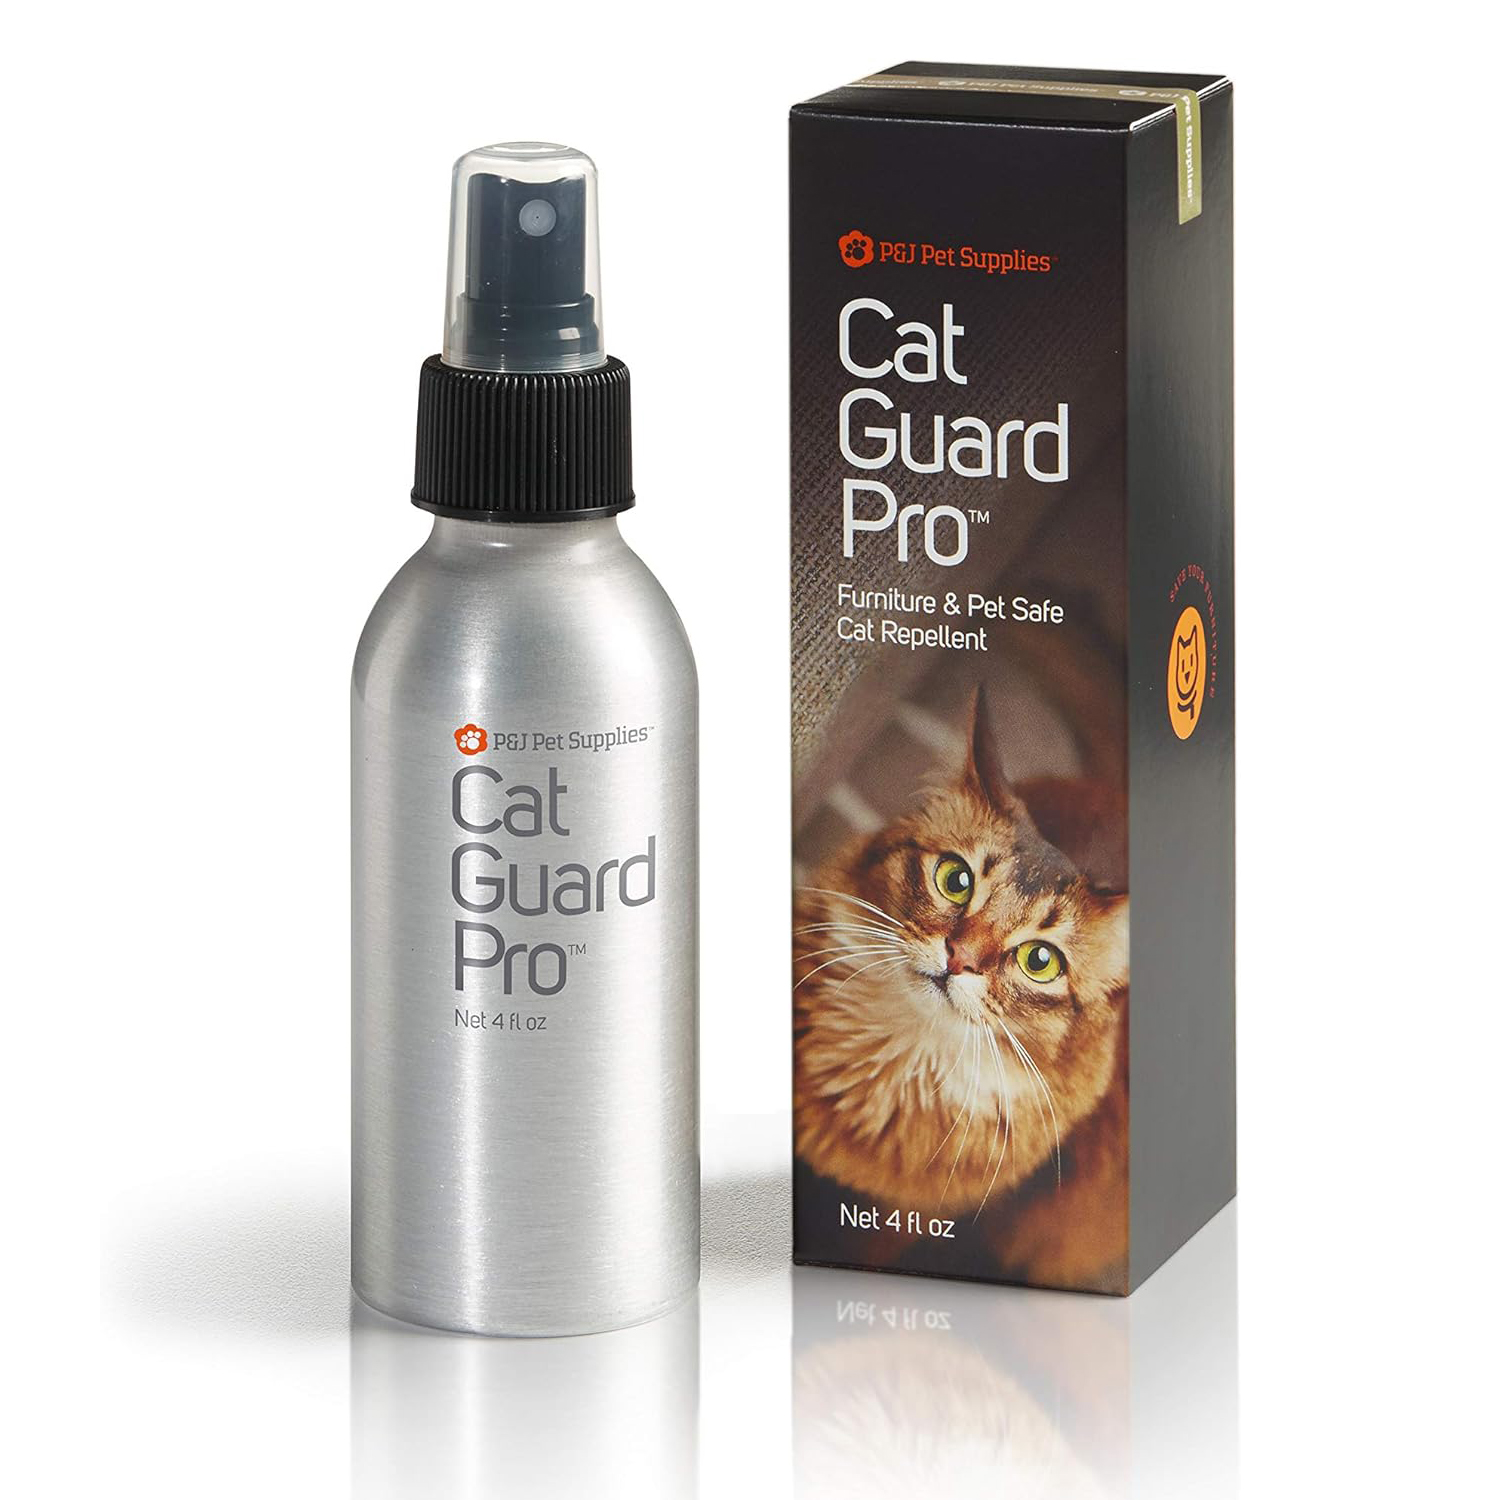 P&J Pet Supplies Cat Guard Pro Pet Safe Furniture Cat Repellent